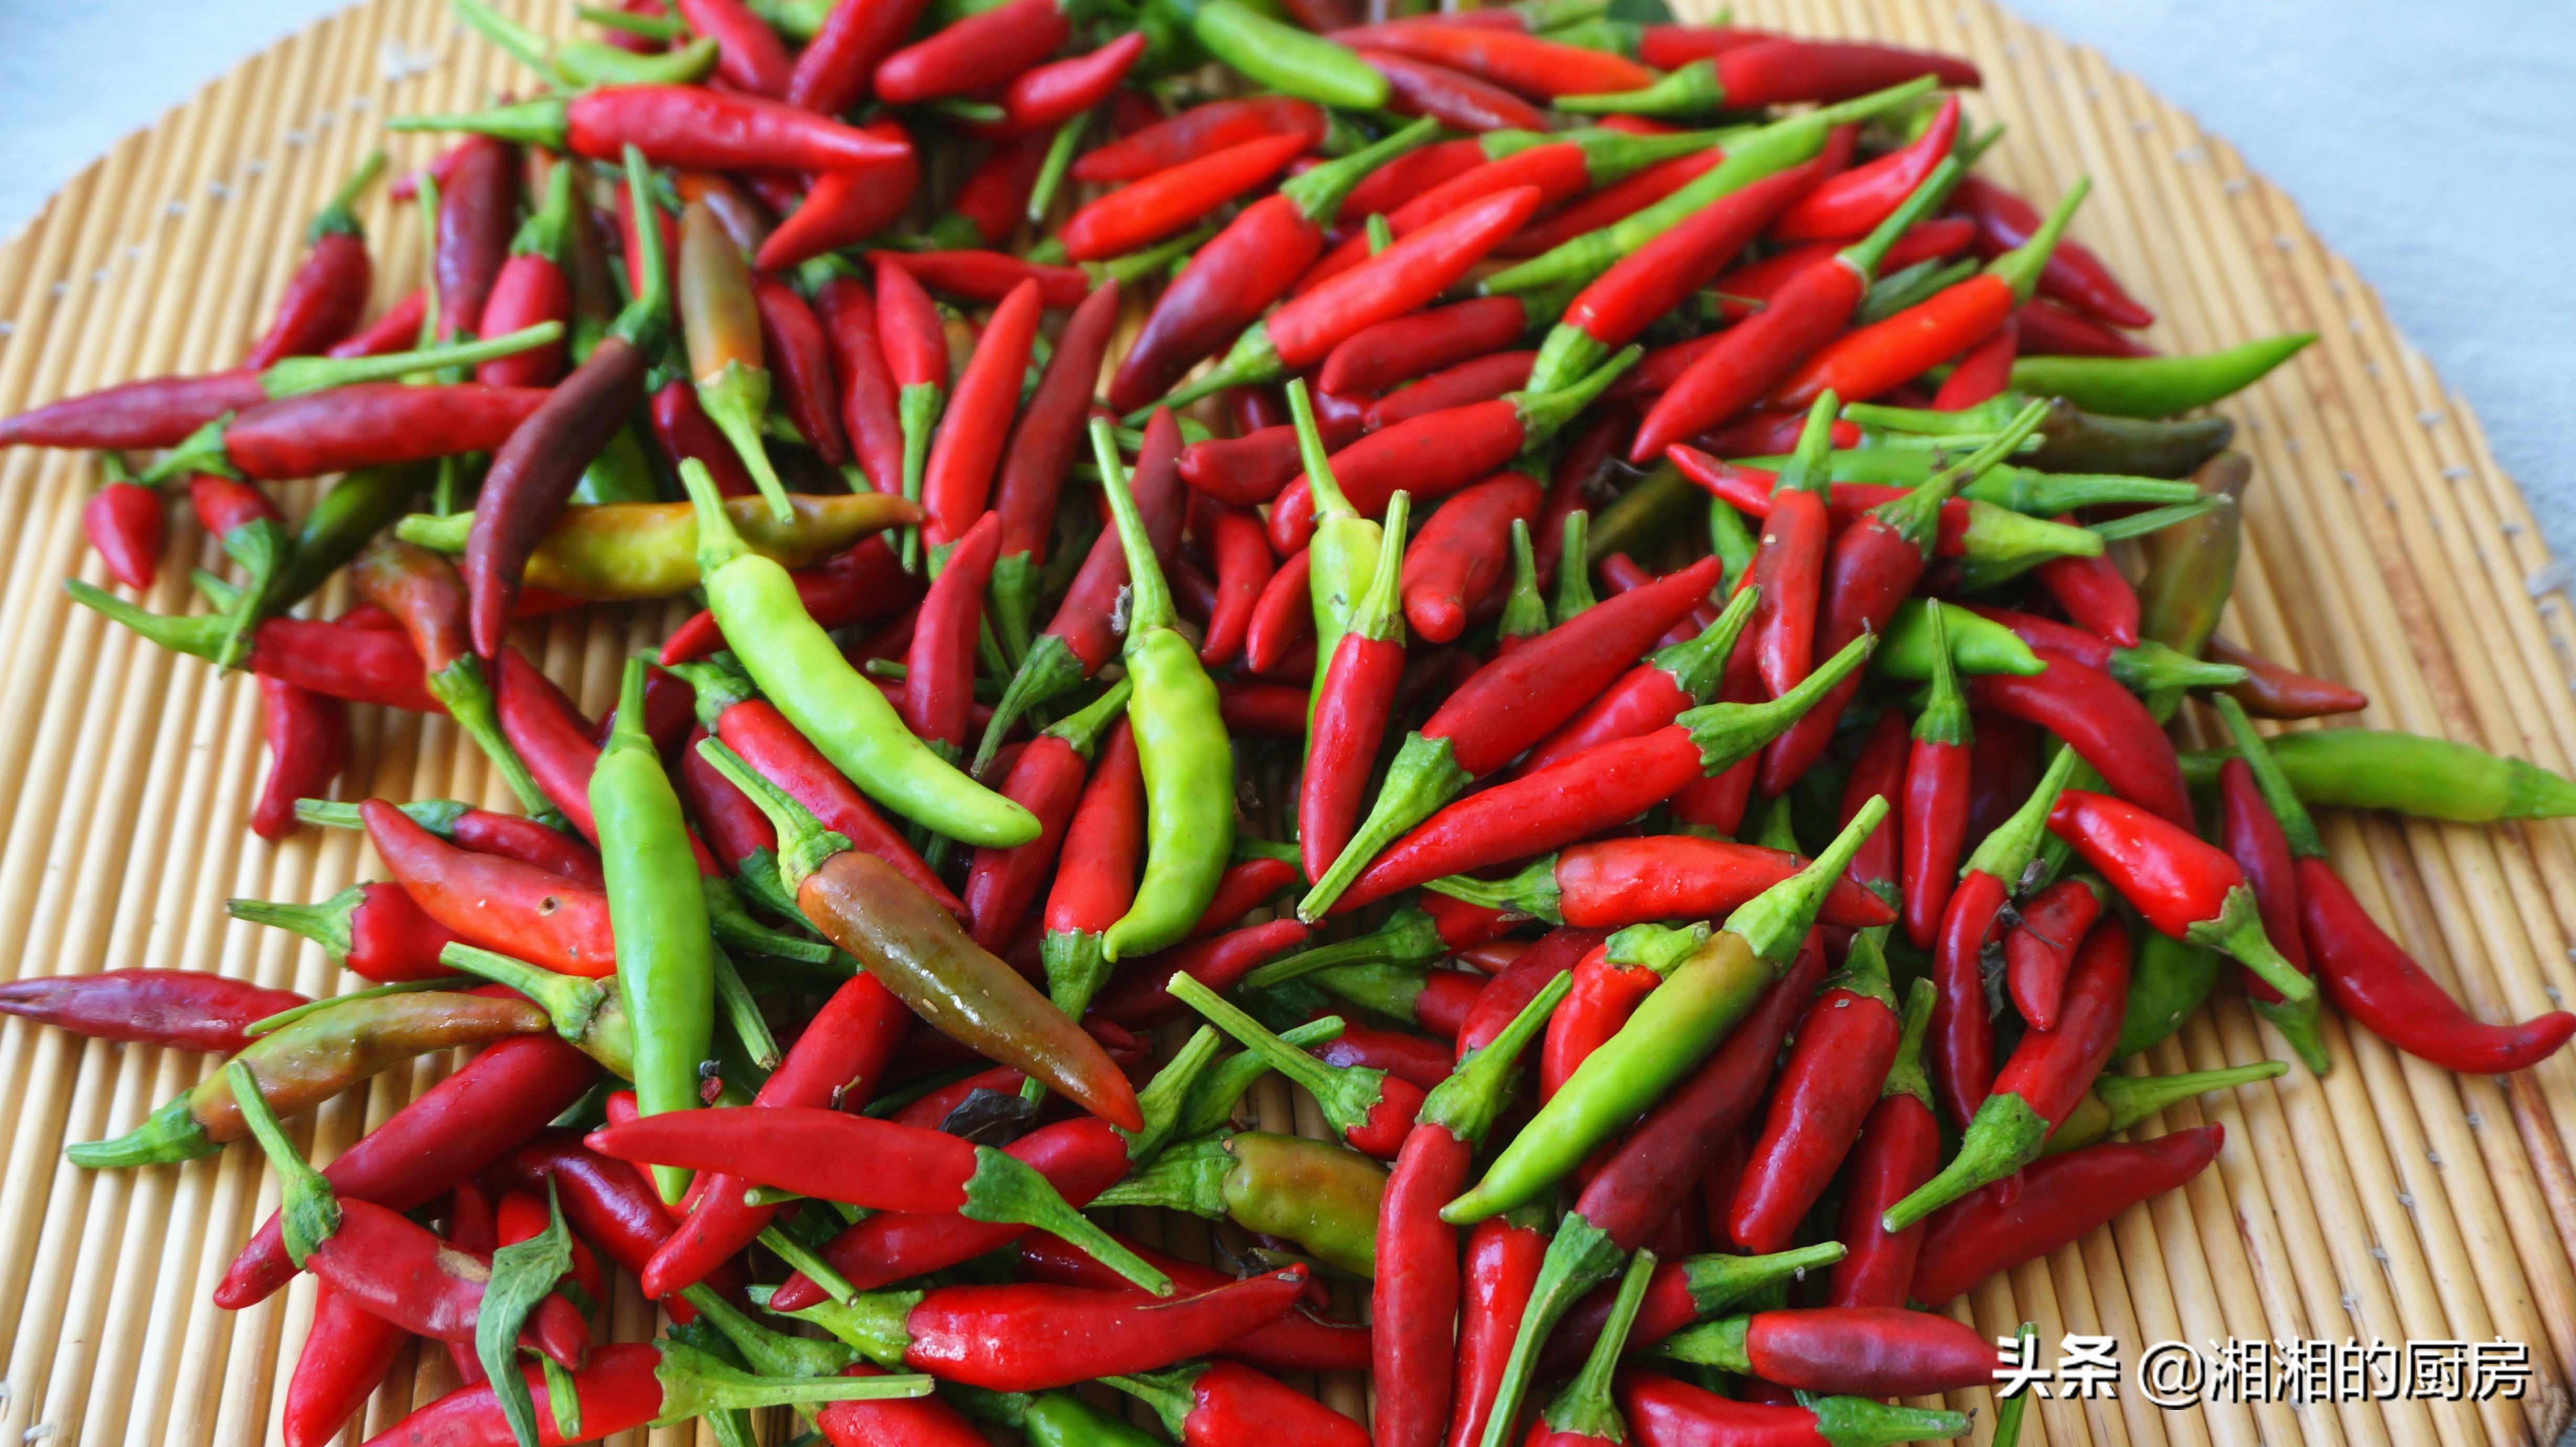 湖南正宗剁辣椒的做法，步骤详细，无添加剂，放到明年都不坏